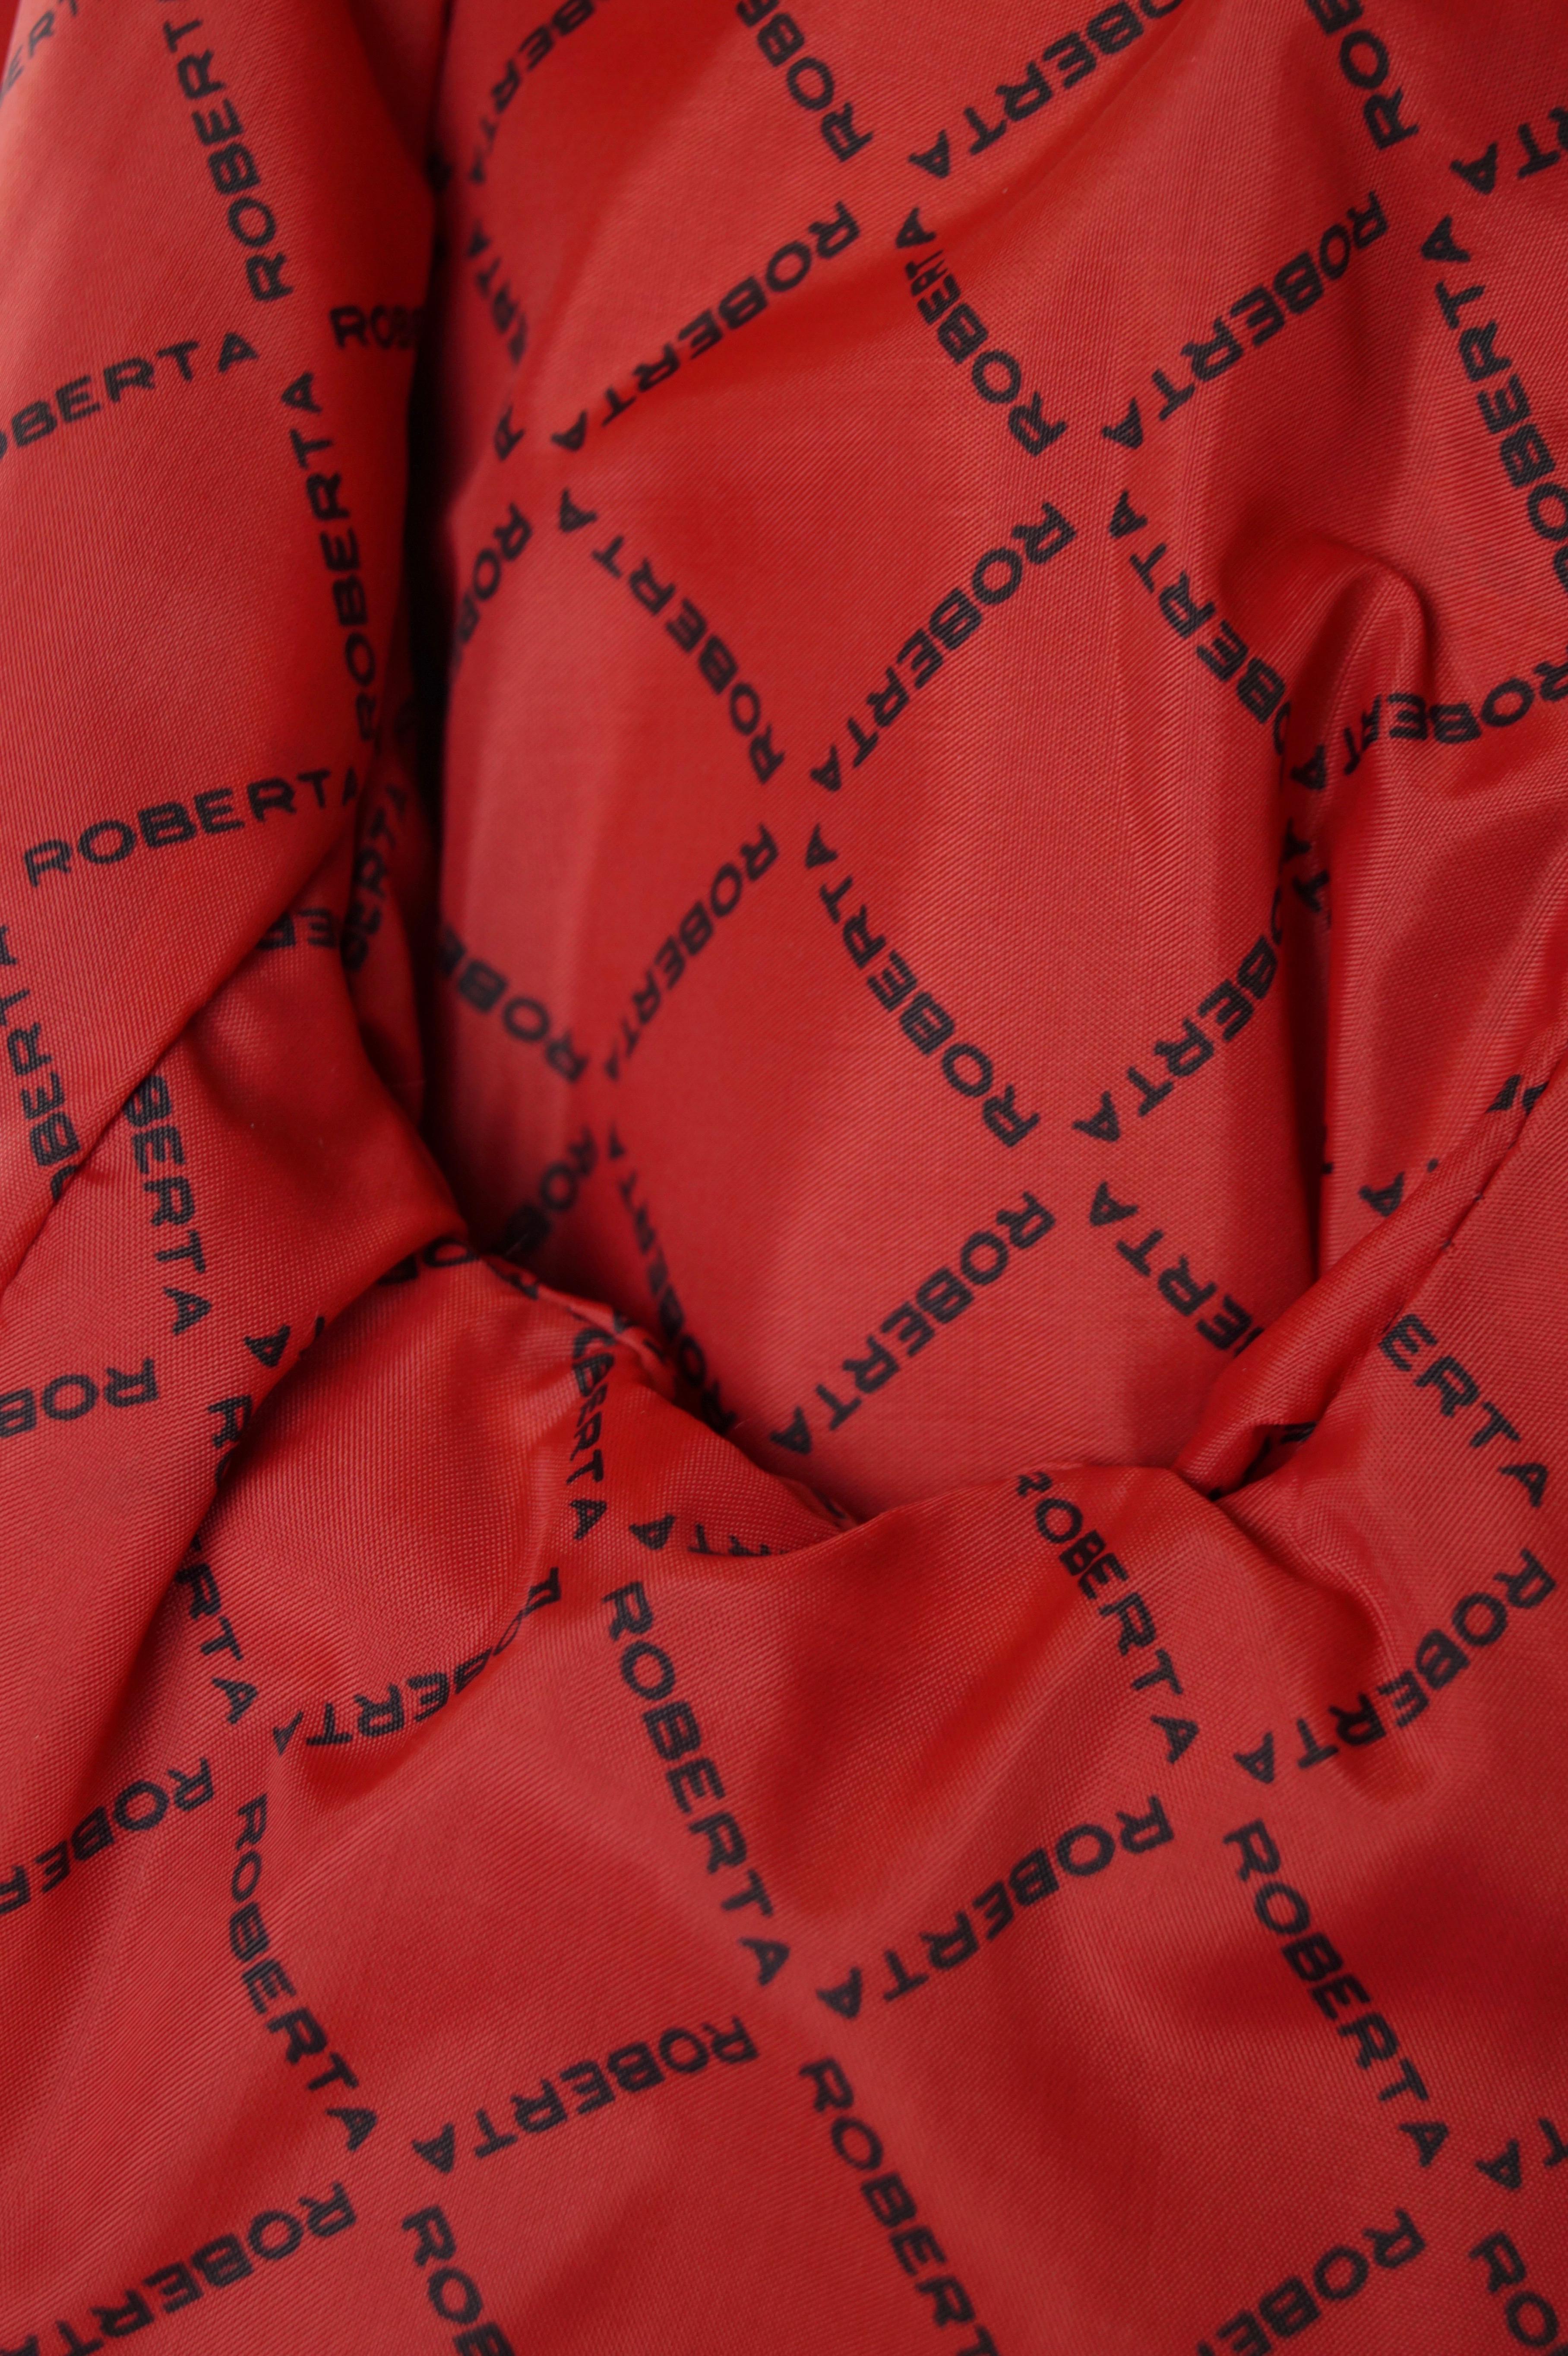 Roberta di Camerino velvet red coat vintage 70s For Sale 6